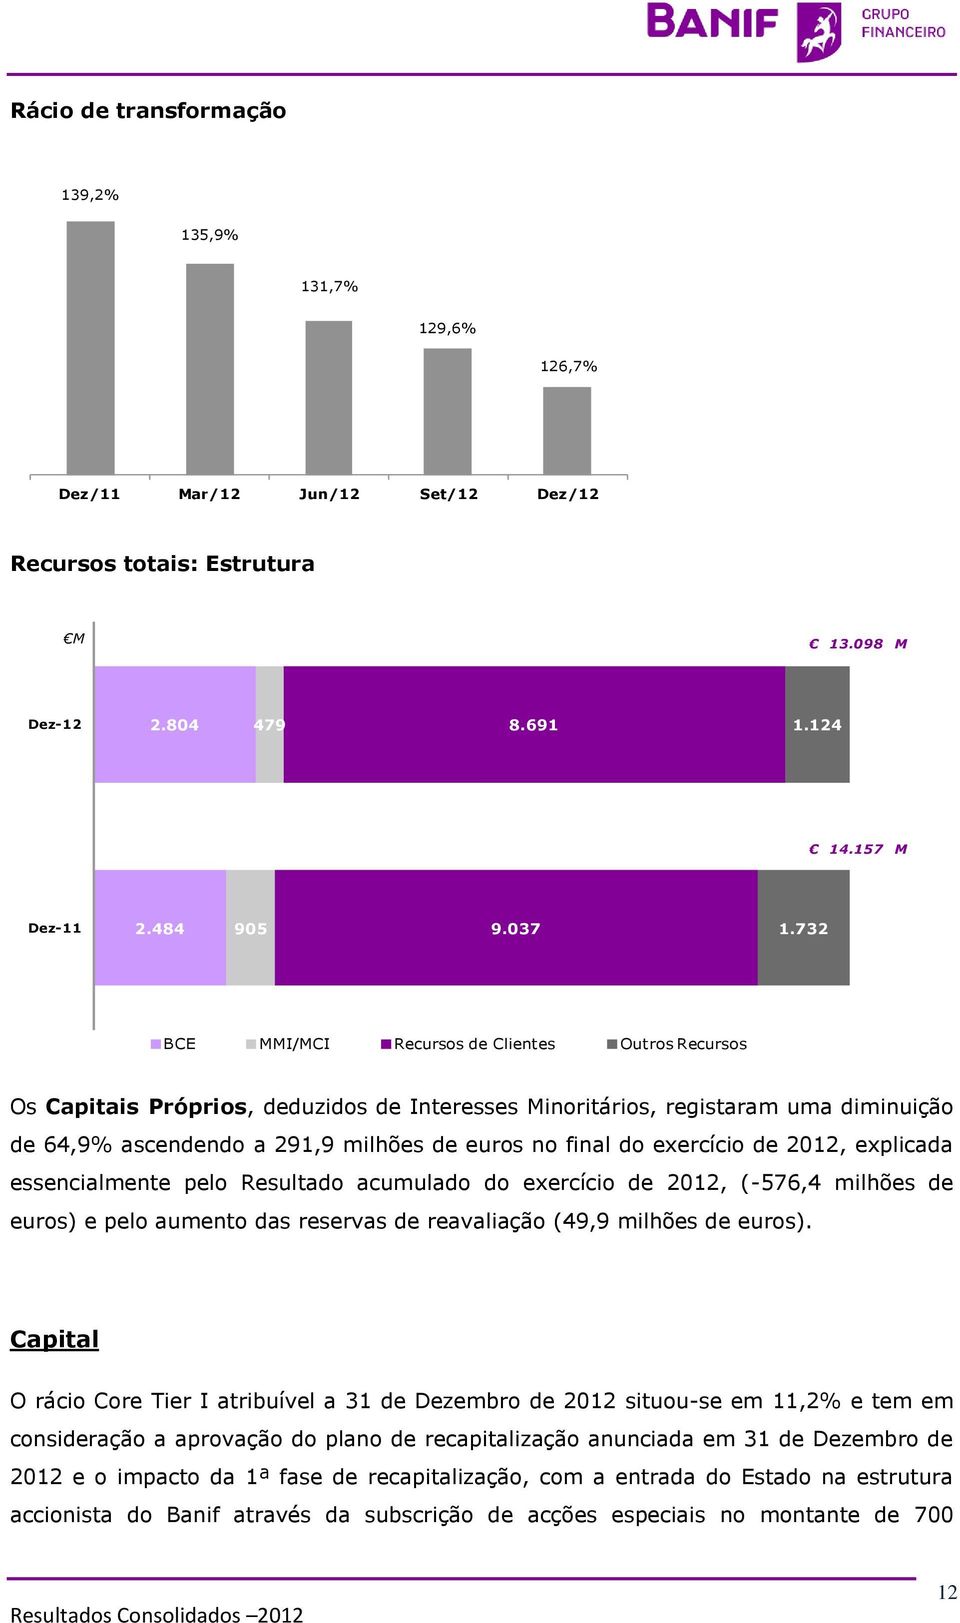 exercício de 2012, explicada essencialmente pelo Resultado acumulado do exercício de 2012, (-576,4 milhões de euros) e pelo aumento das reservas de reavaliação (49,9 milhões de euros).